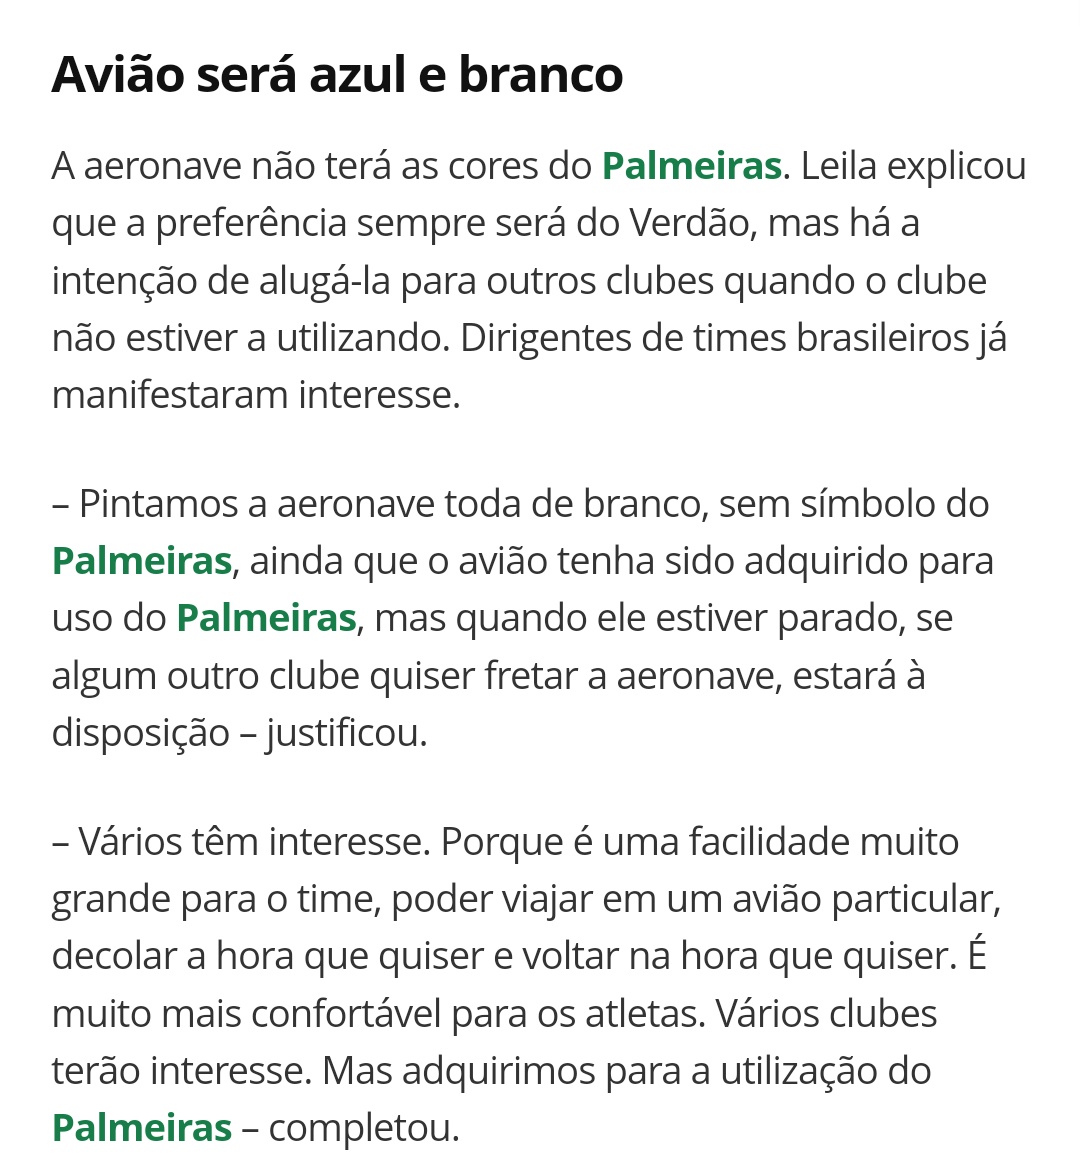 Leila Pereira pretende alugar o avião para outros clubes e a aeronave não será personalizado com o logotipos ou referências do Palmeiras.